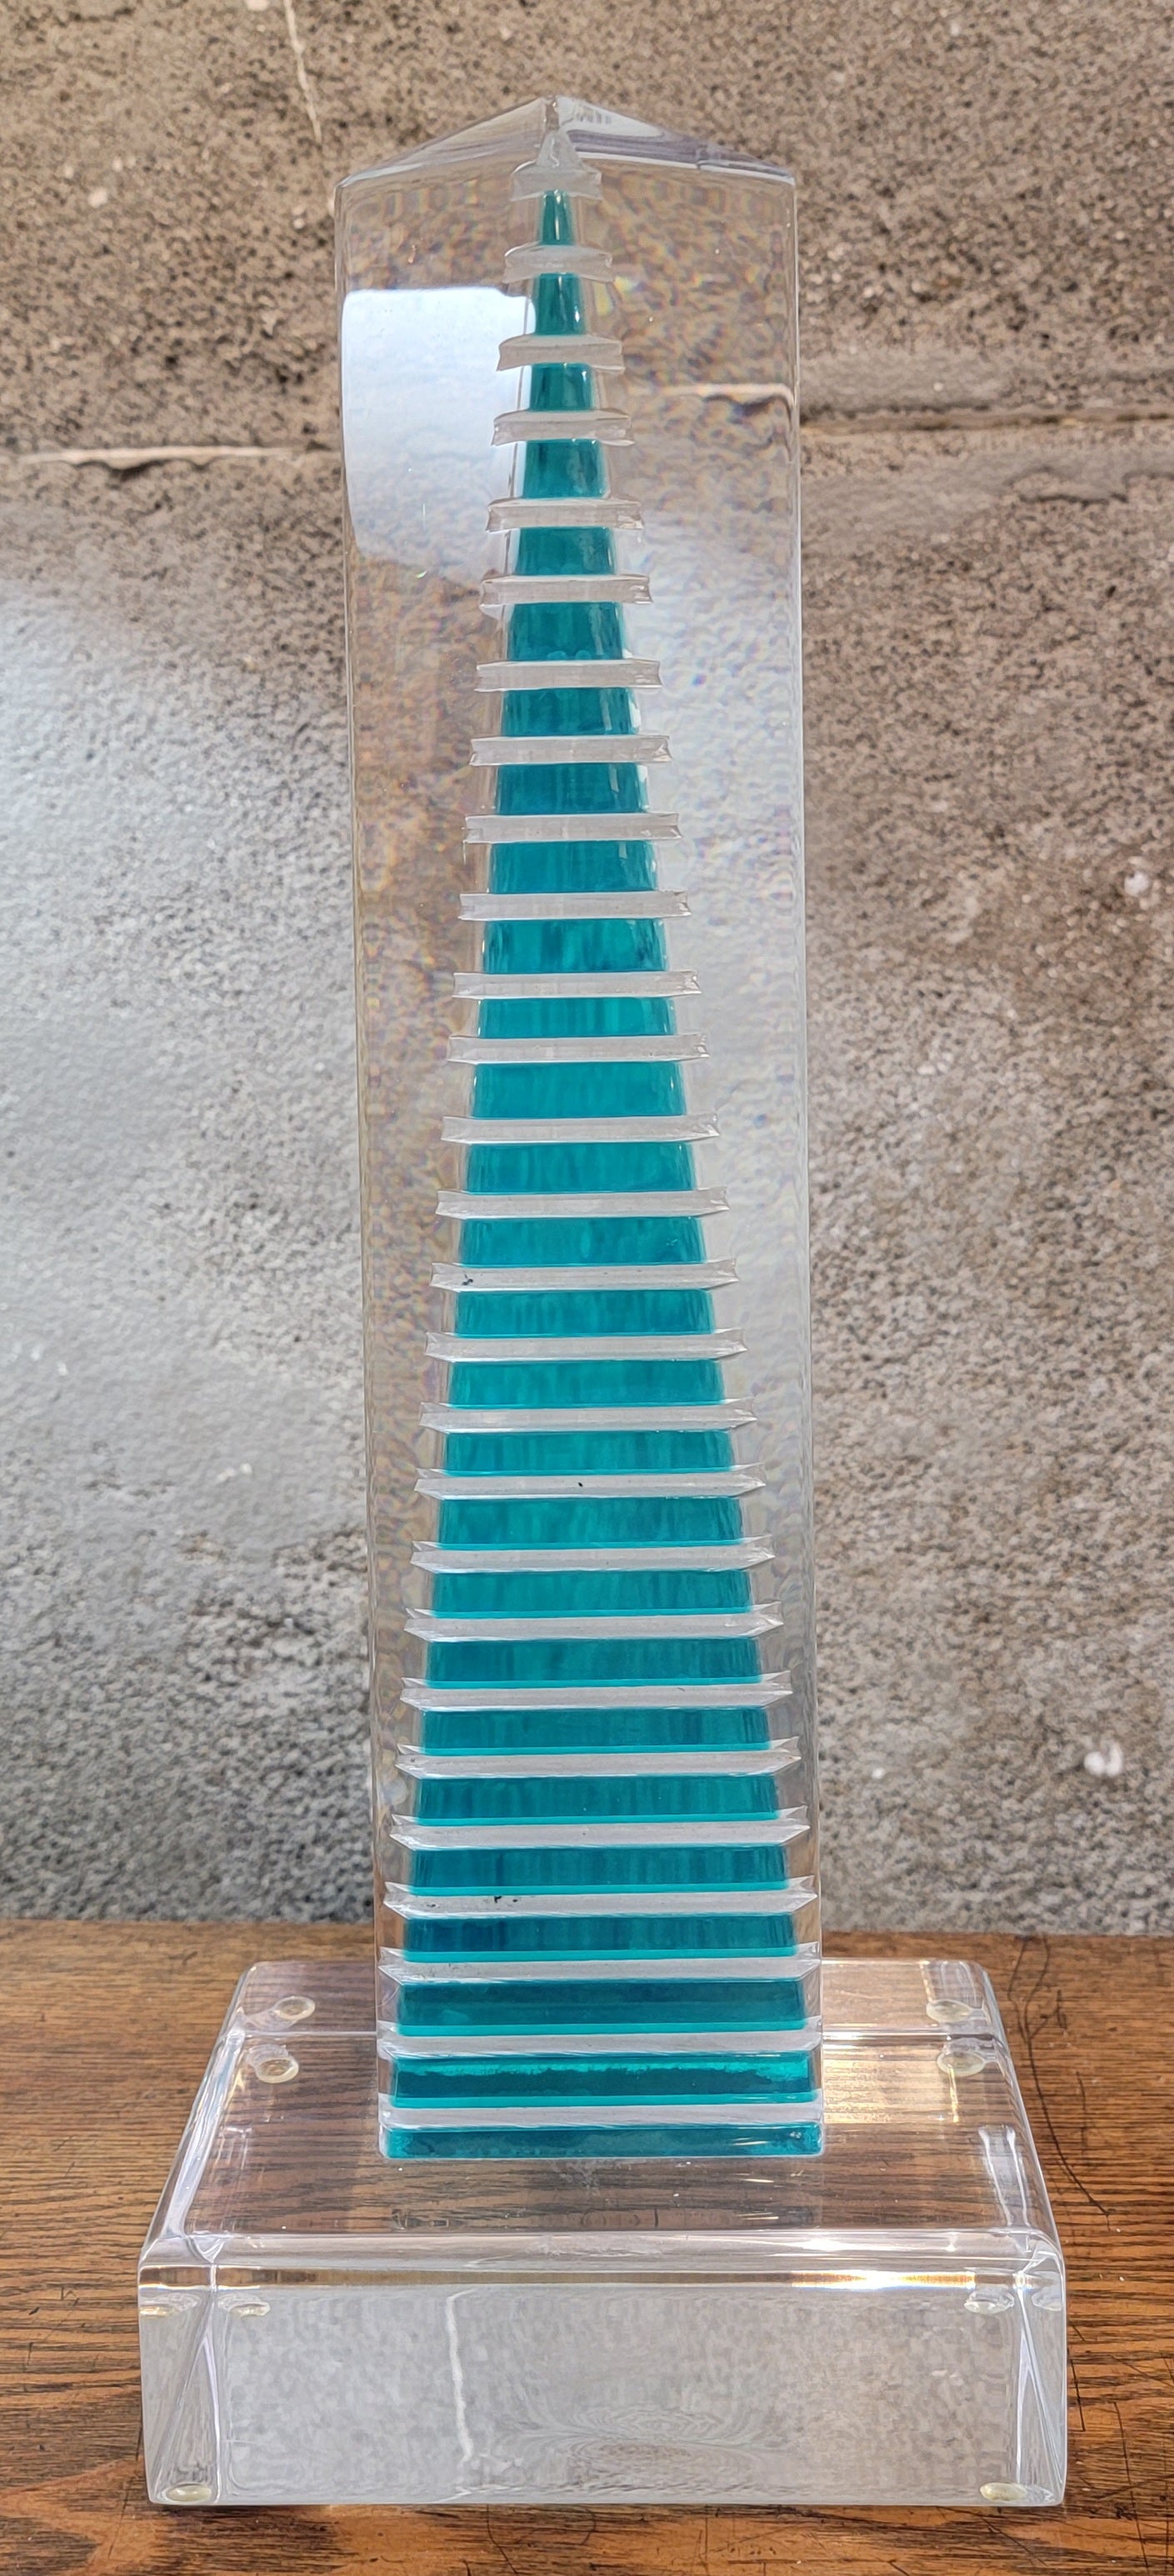 Une sculpture géométrique en Lucite ou en acrylique. Des rectangles aqua diminuants en monolithe en lucite transparente créent un effet de gratte-ciel architectural. Pieds de 15,75